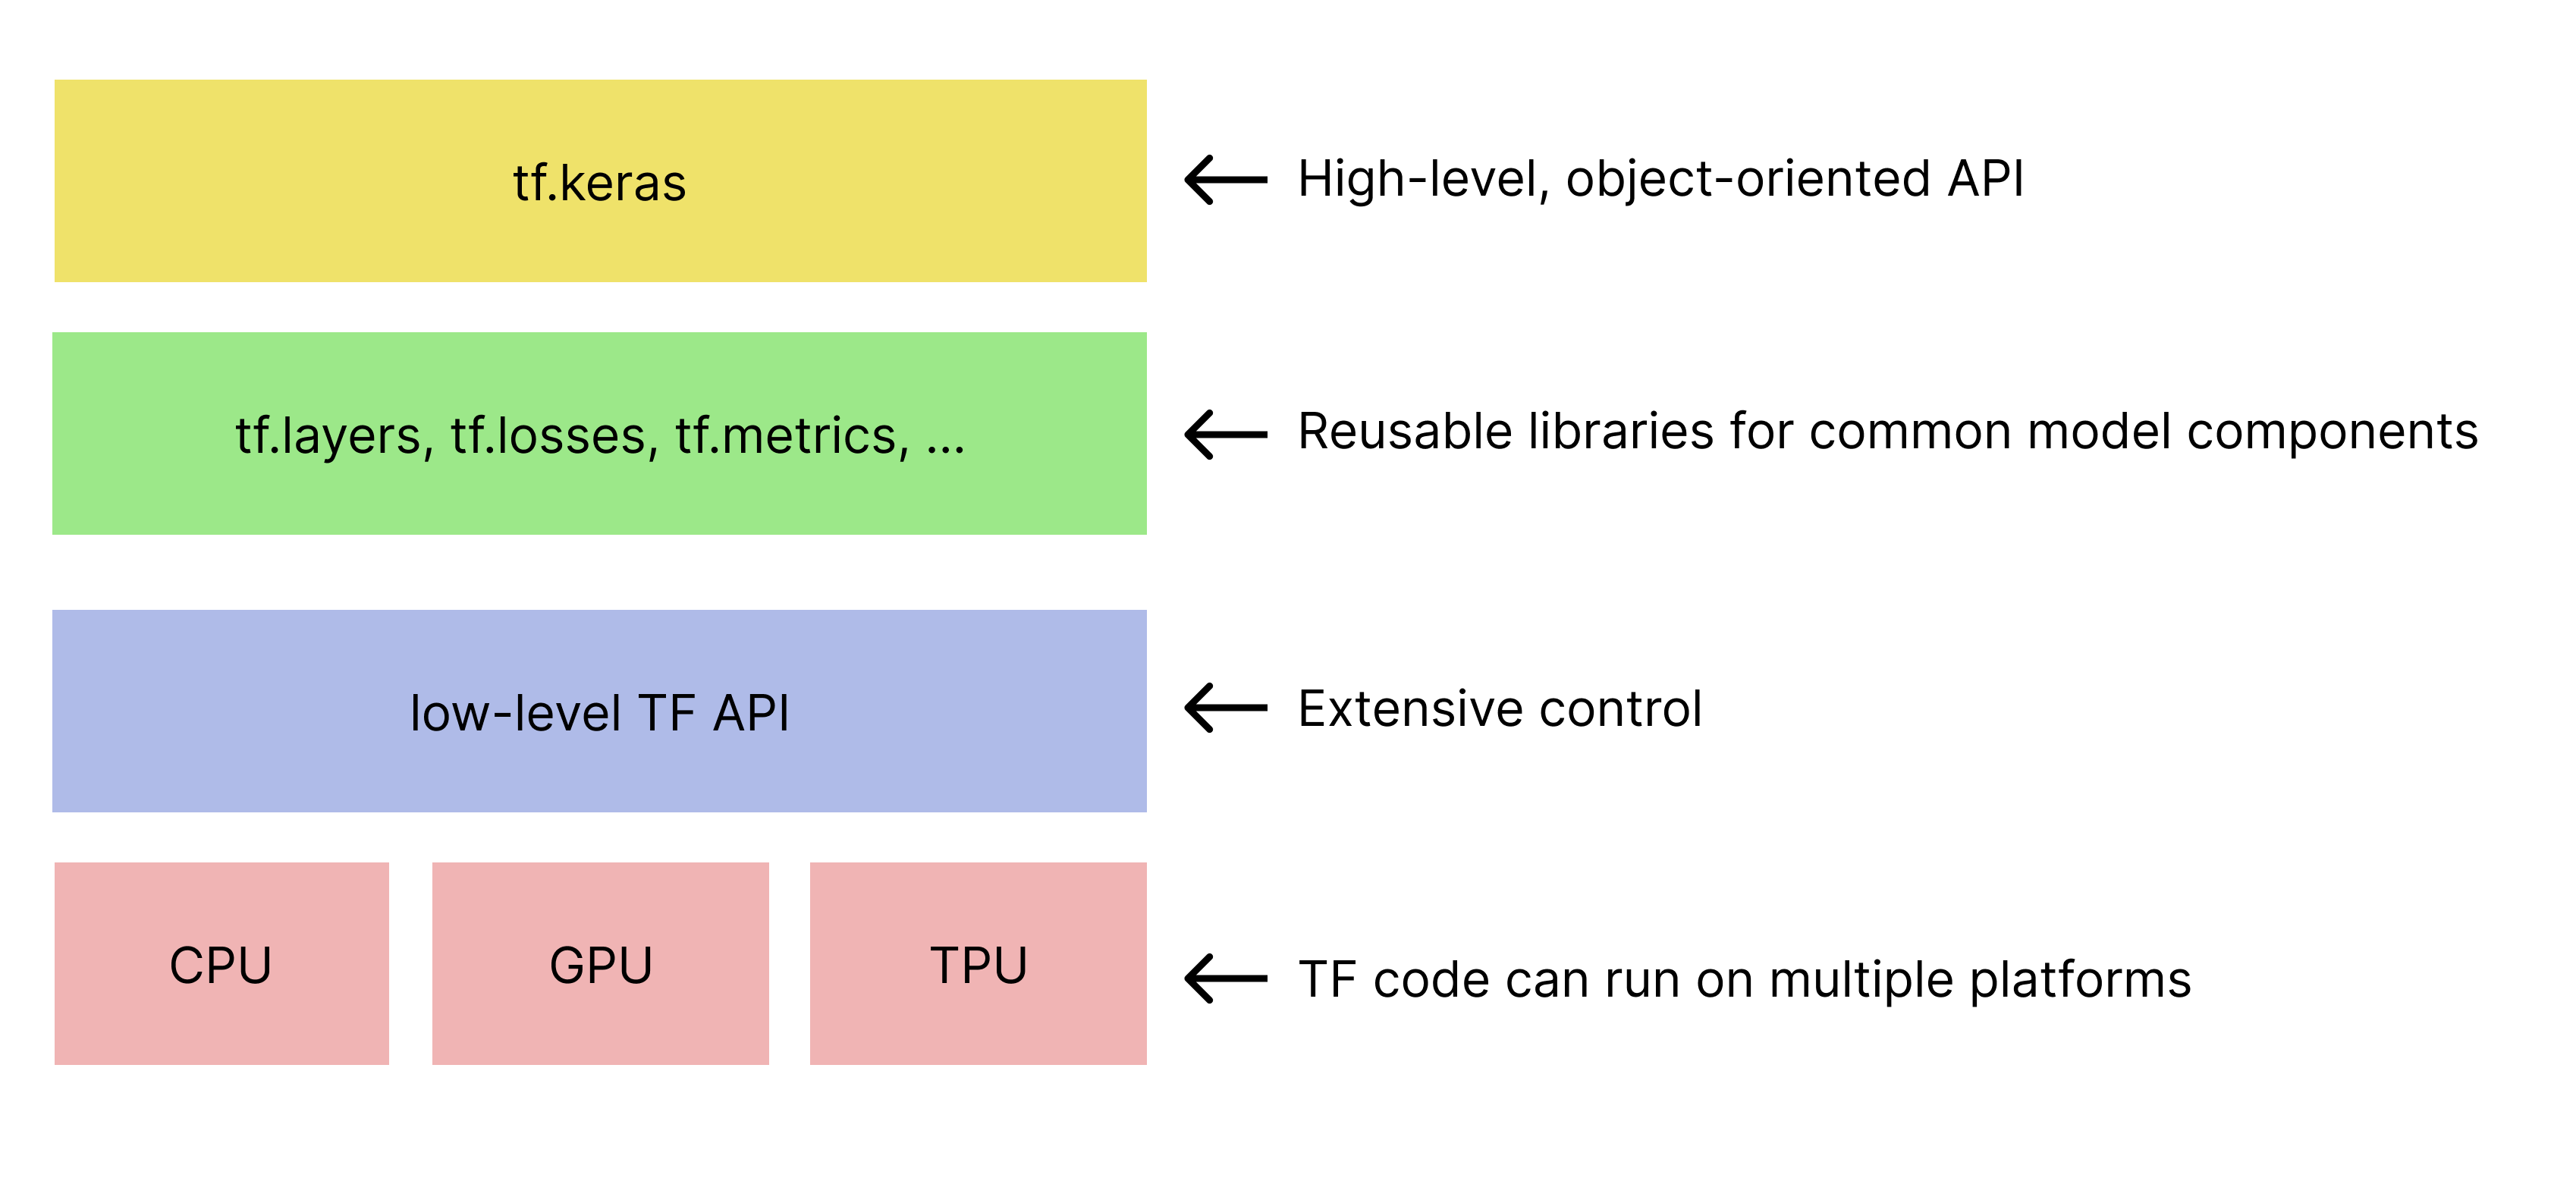 سلسله مراتب ساده شده جعبه ابزار TensorFlow. tf.keras API در بالا قرار دارد.